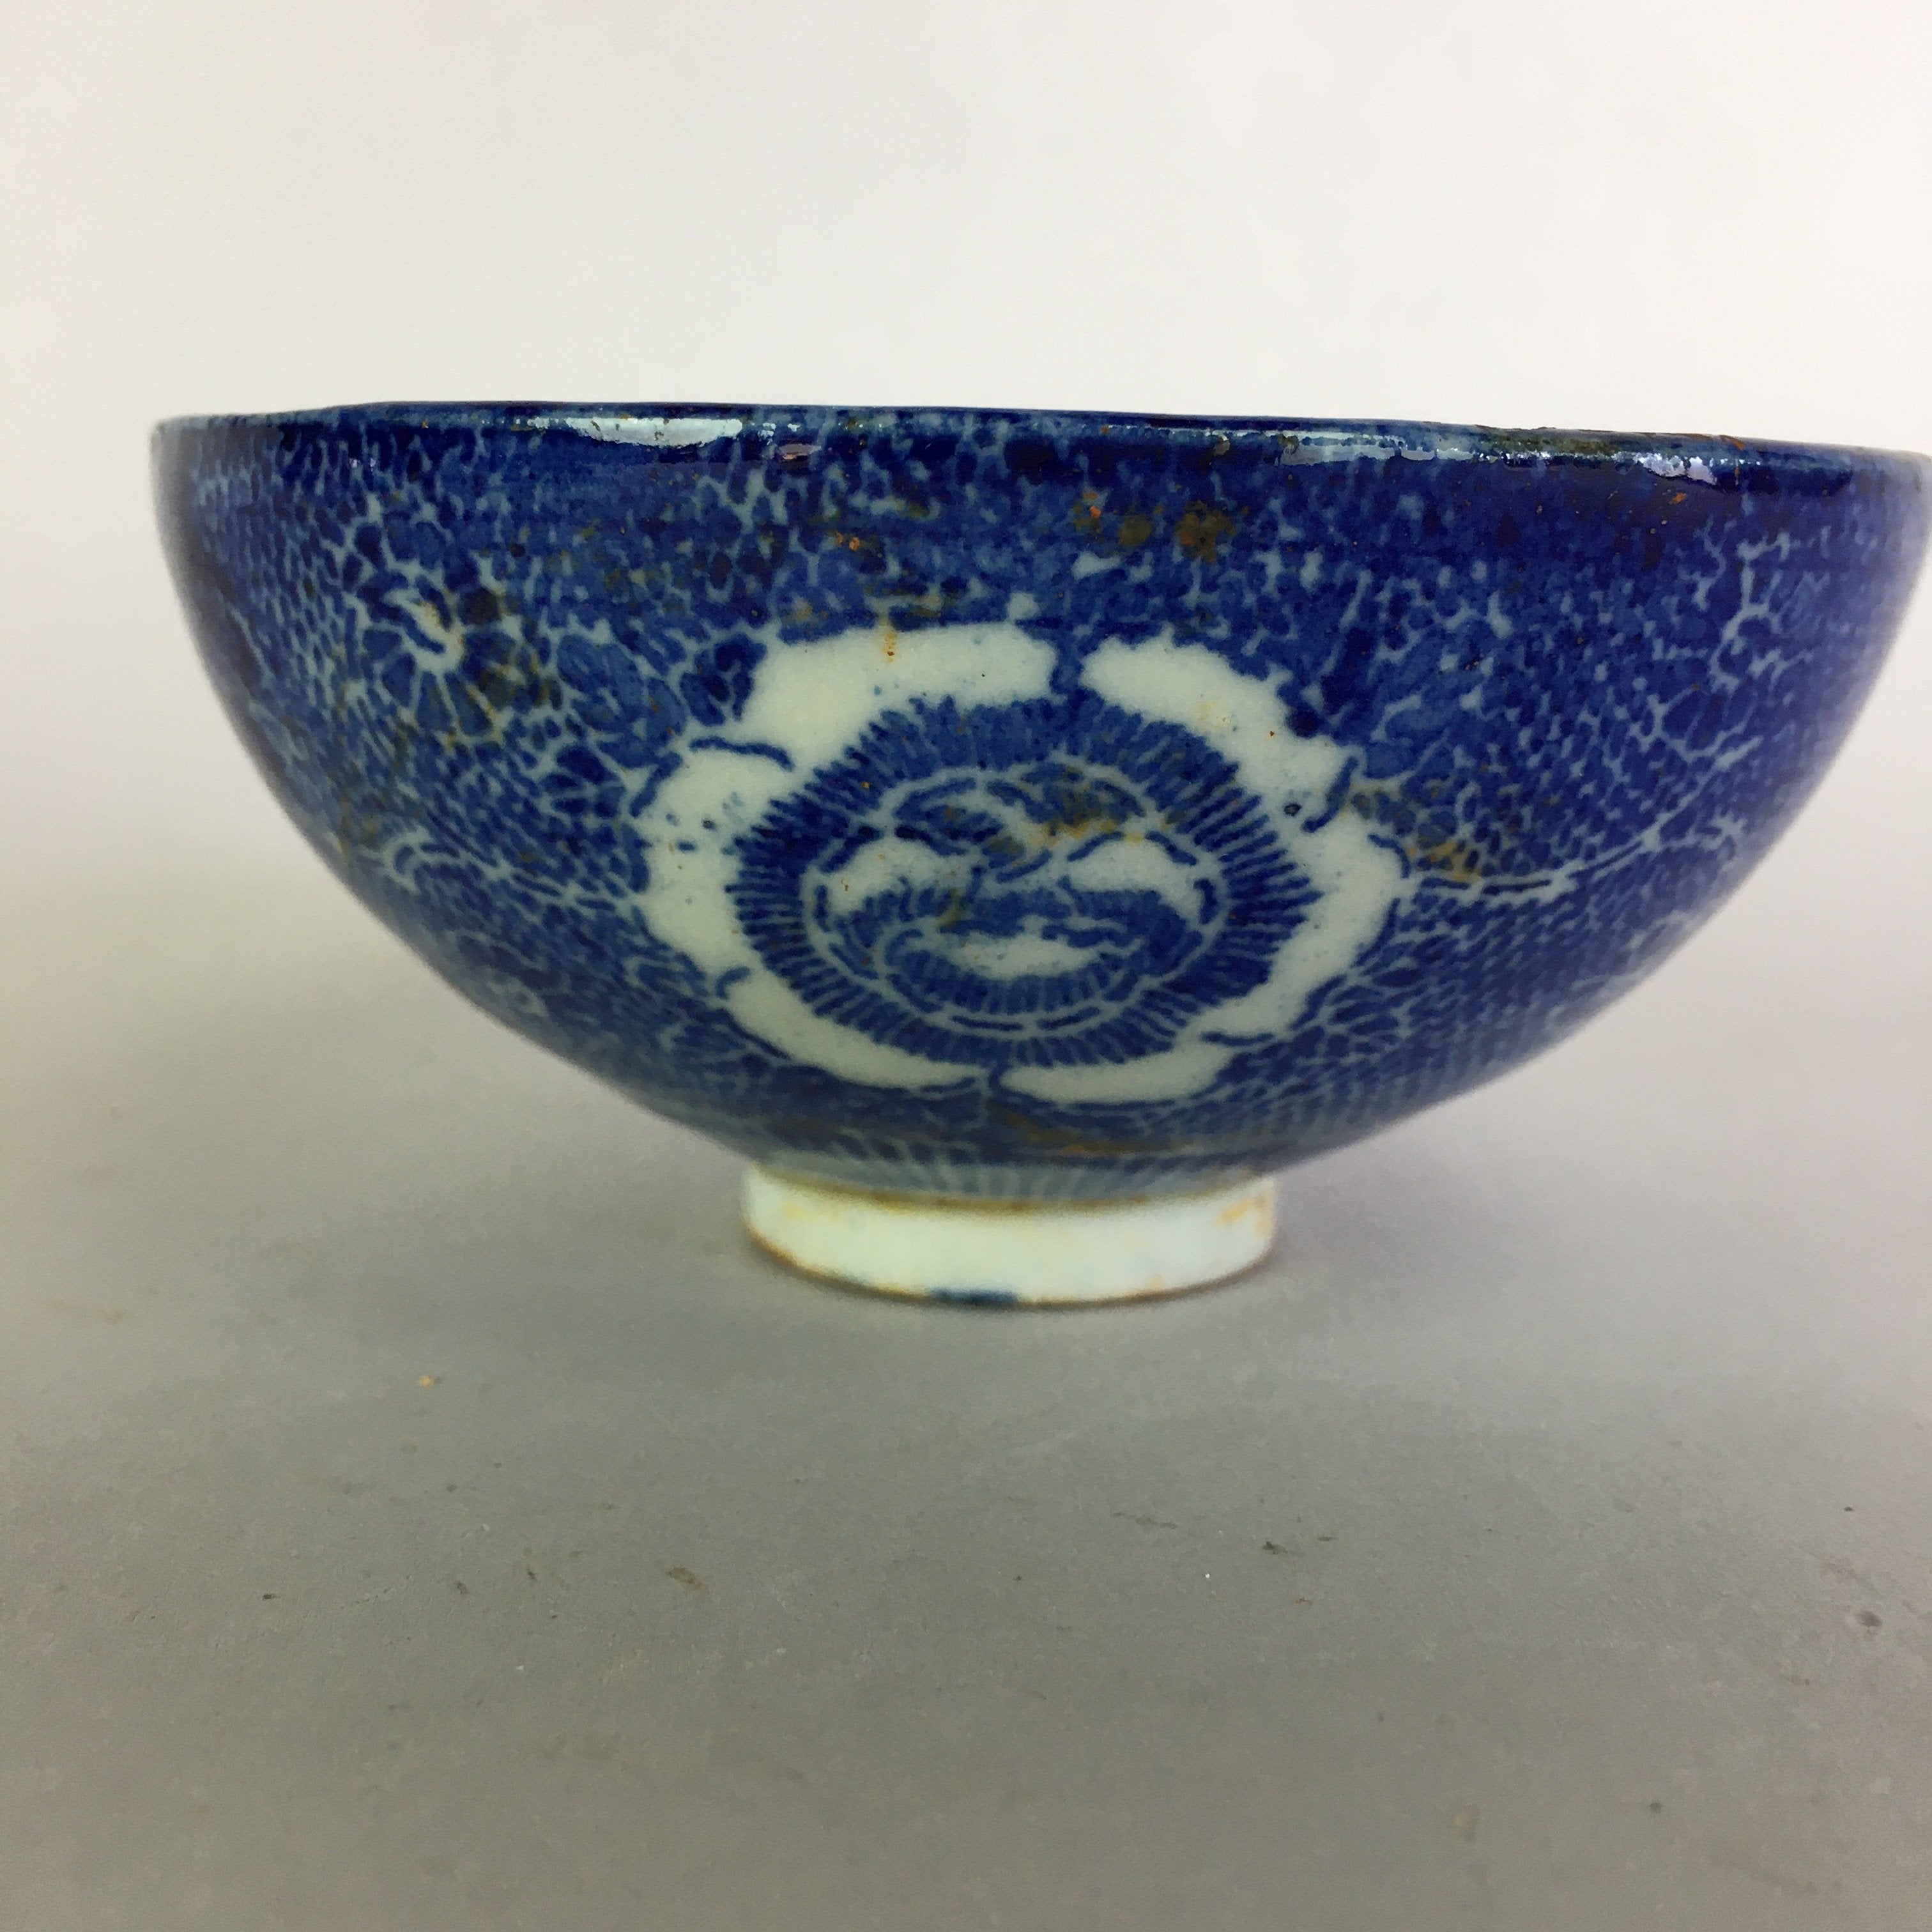 Japanese Porcelain Rice Bowl Vtg Chawan Blue White Flower Sometsuke PP477